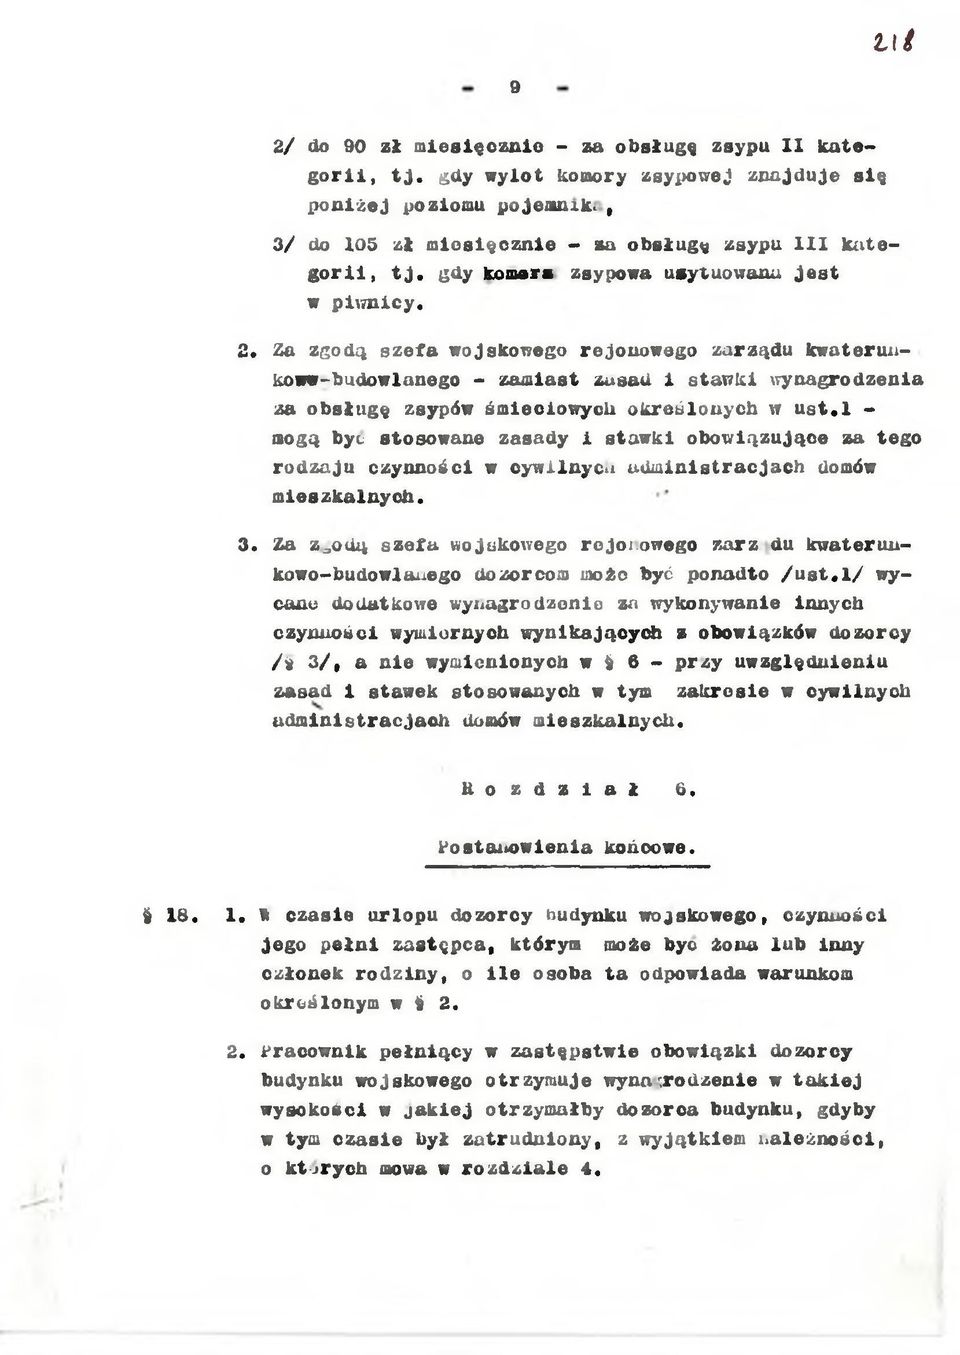 Za zgodą szefa wojskowego rejonowego zarządu kwaterunkoww-budowlanego - zamast zusad stawk wynagrodzena za obsługę zsypów śmecowych określonych w u s t.